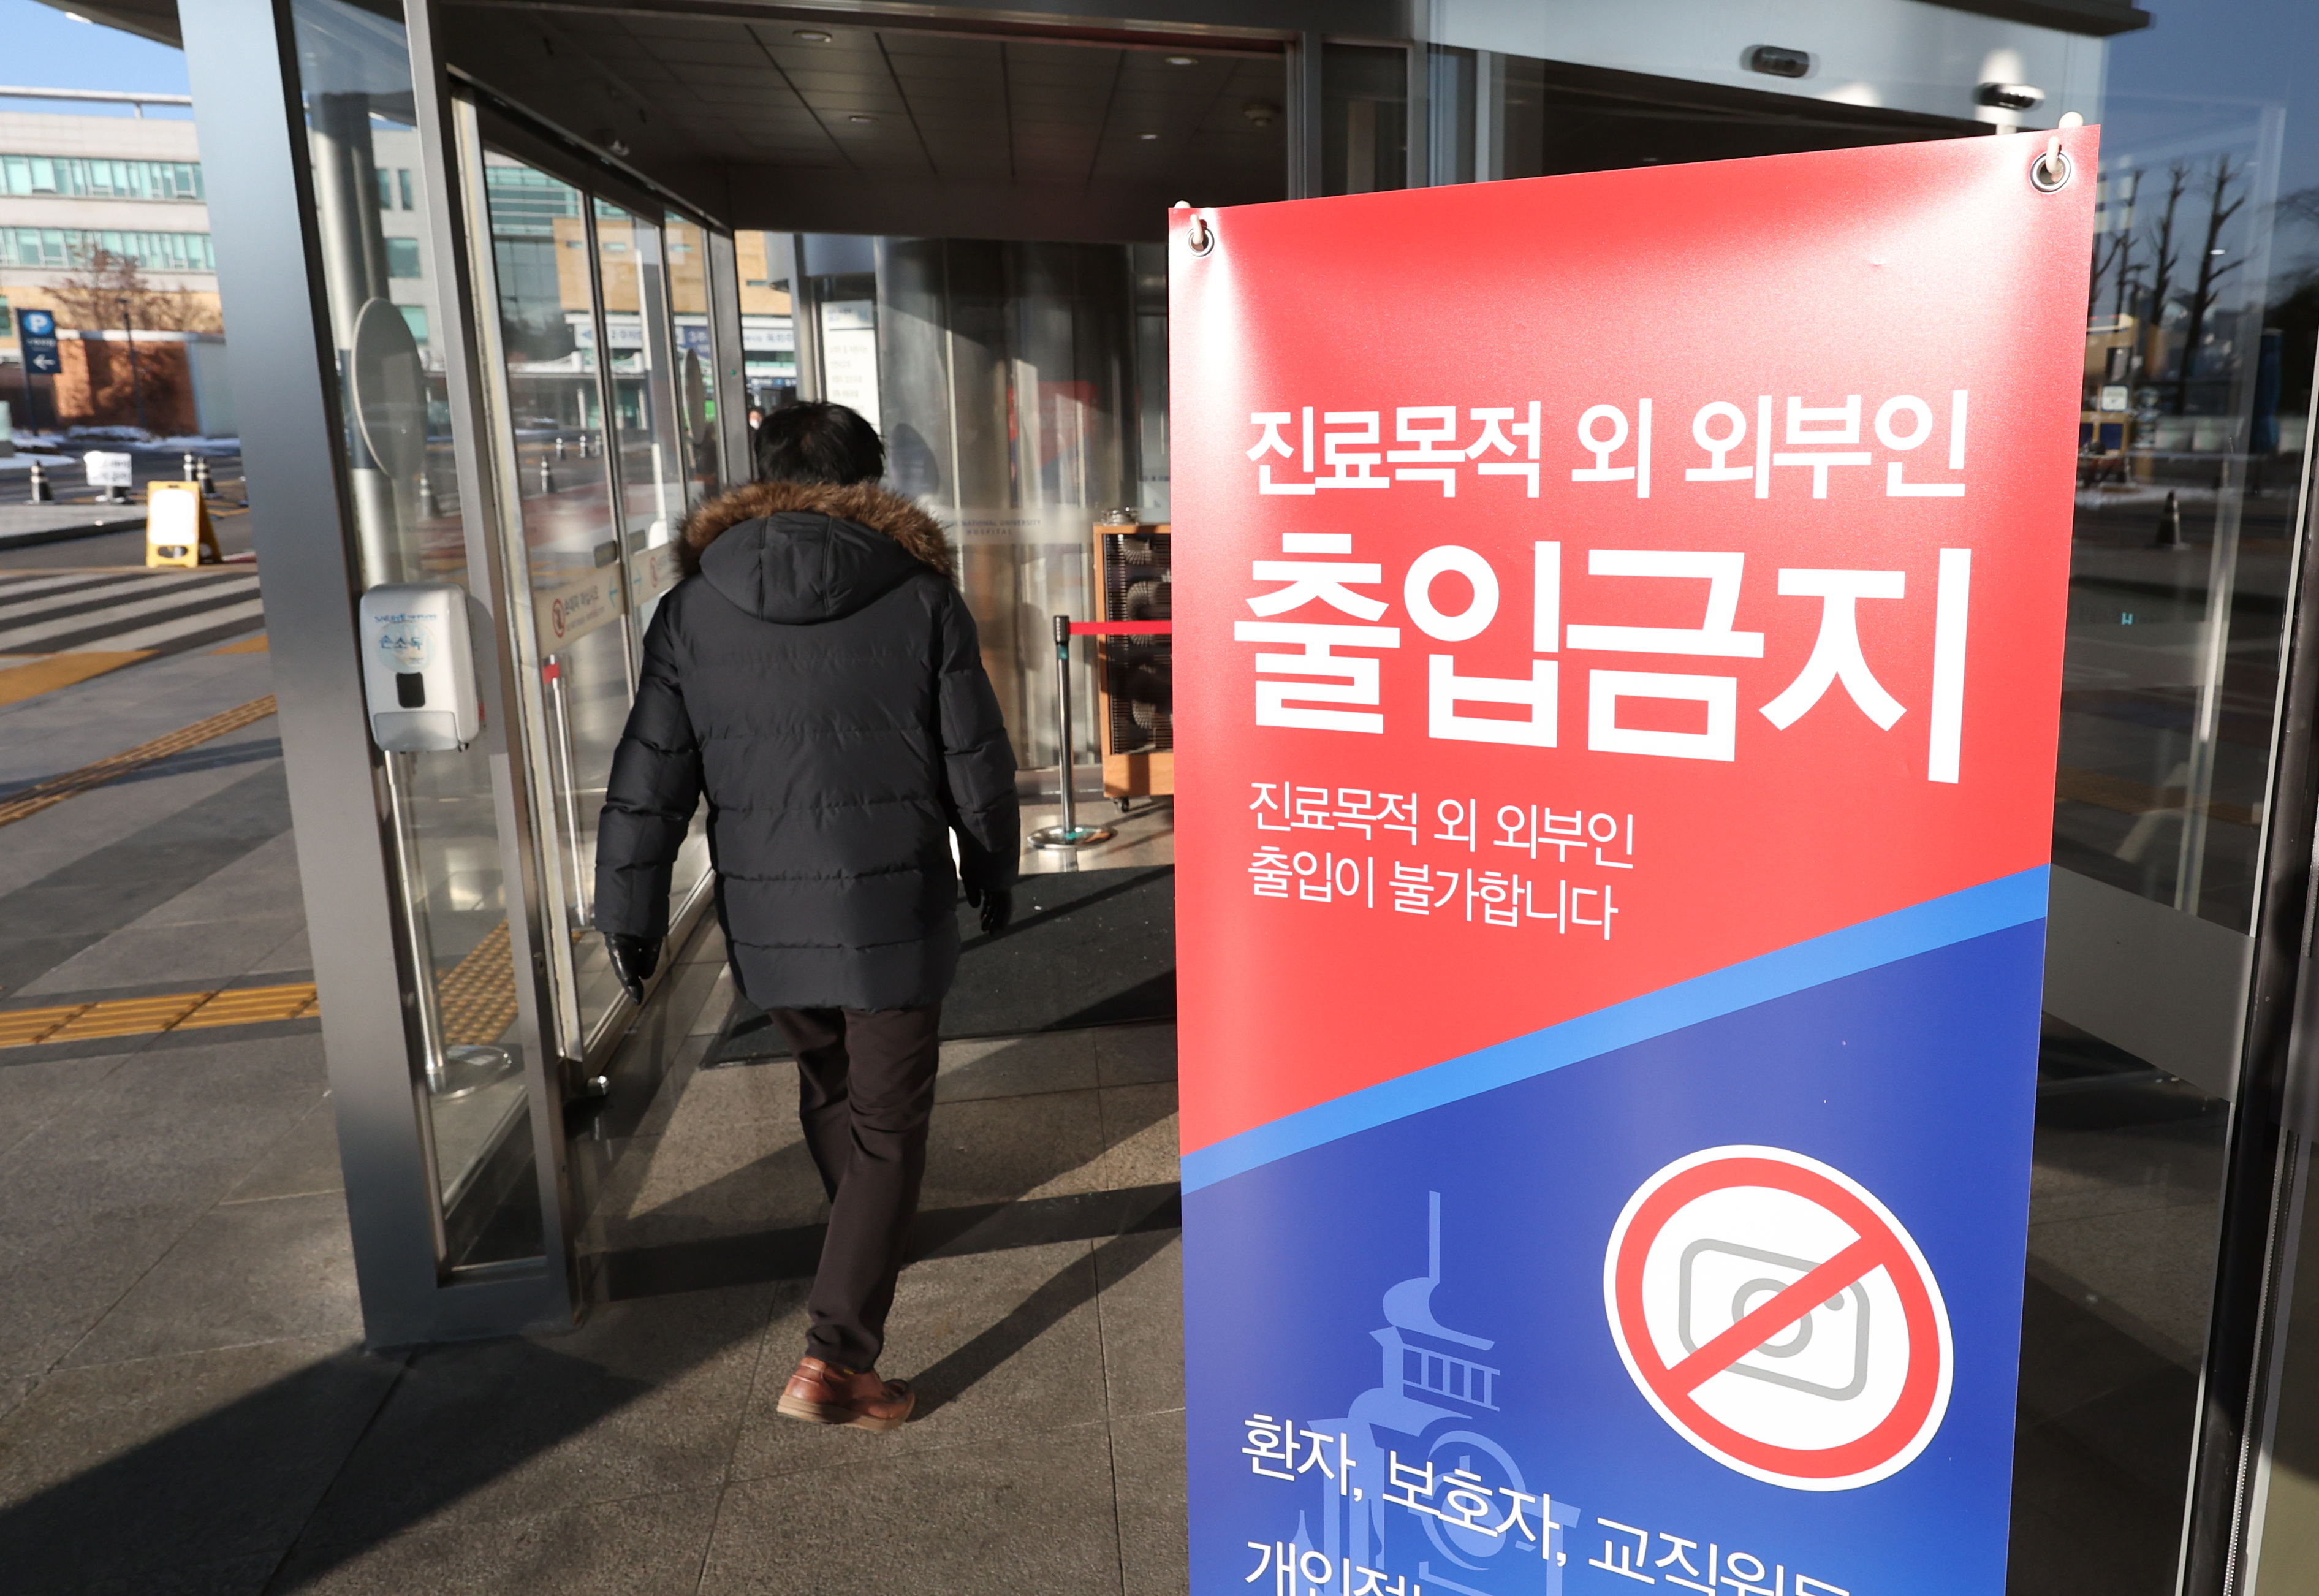 서울대병원에 세워진 외부인 출입금지 안내문